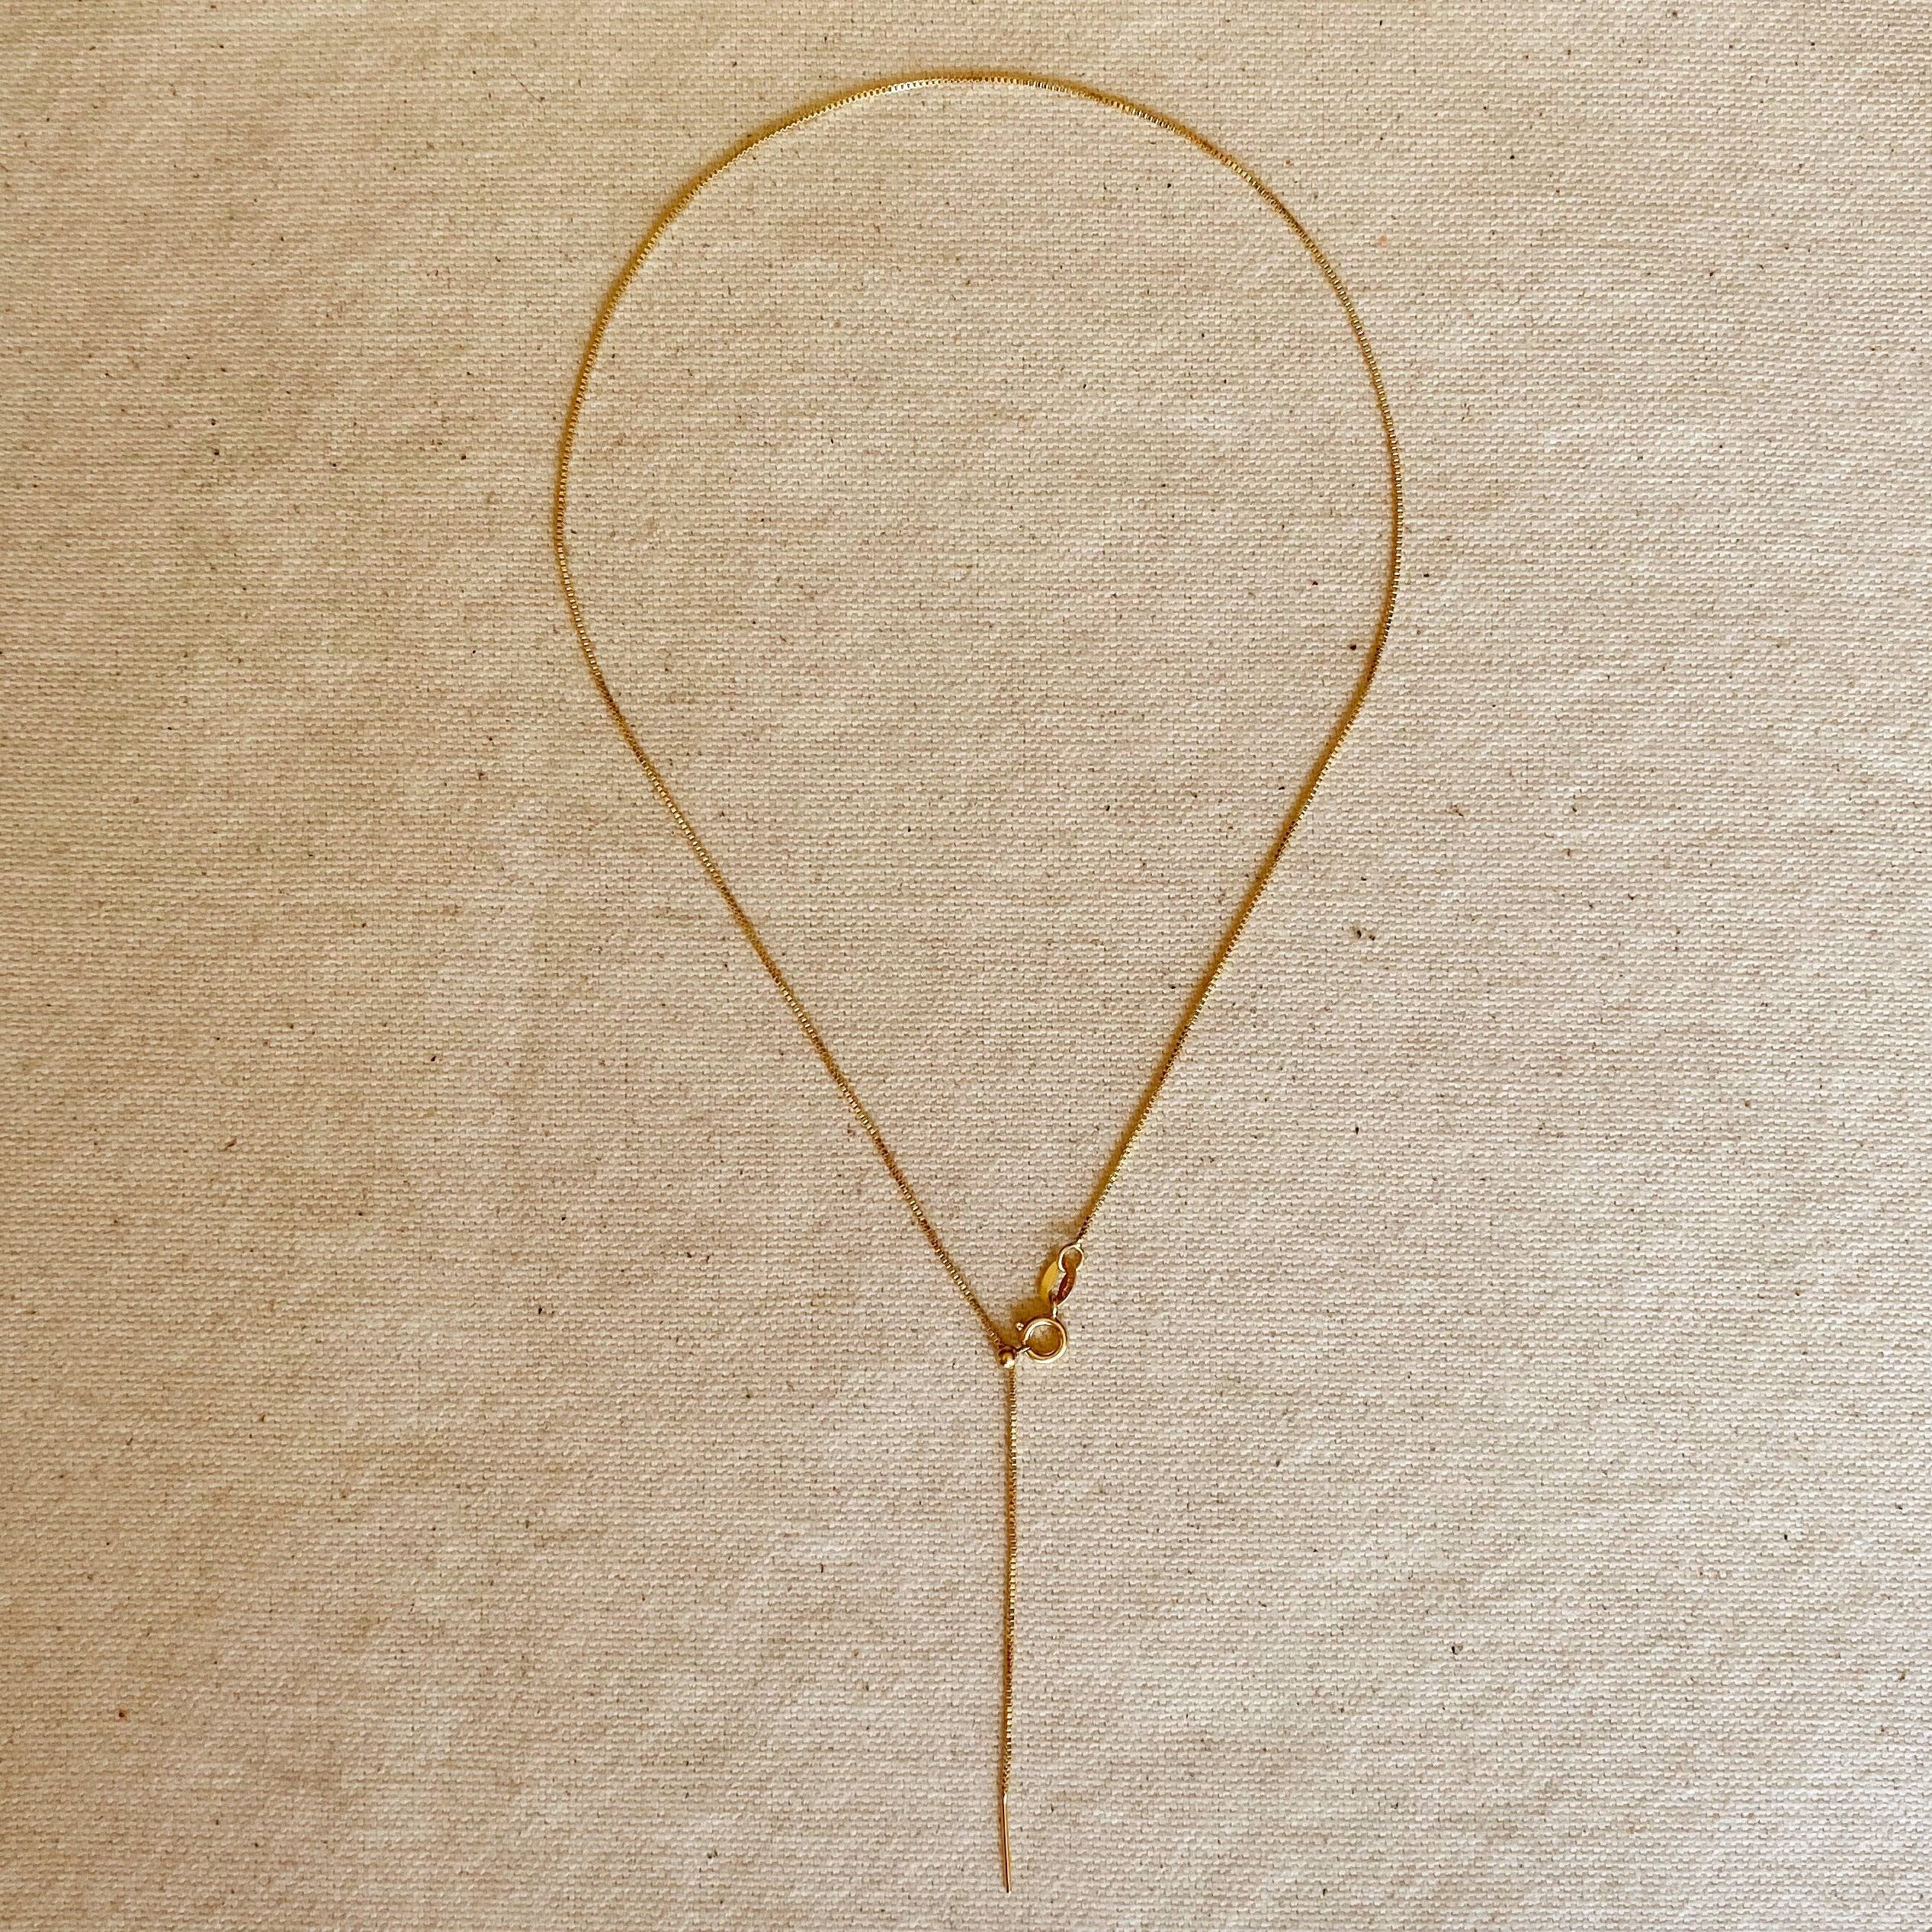 18k Gold Filled Adjustable Sizing Necklace